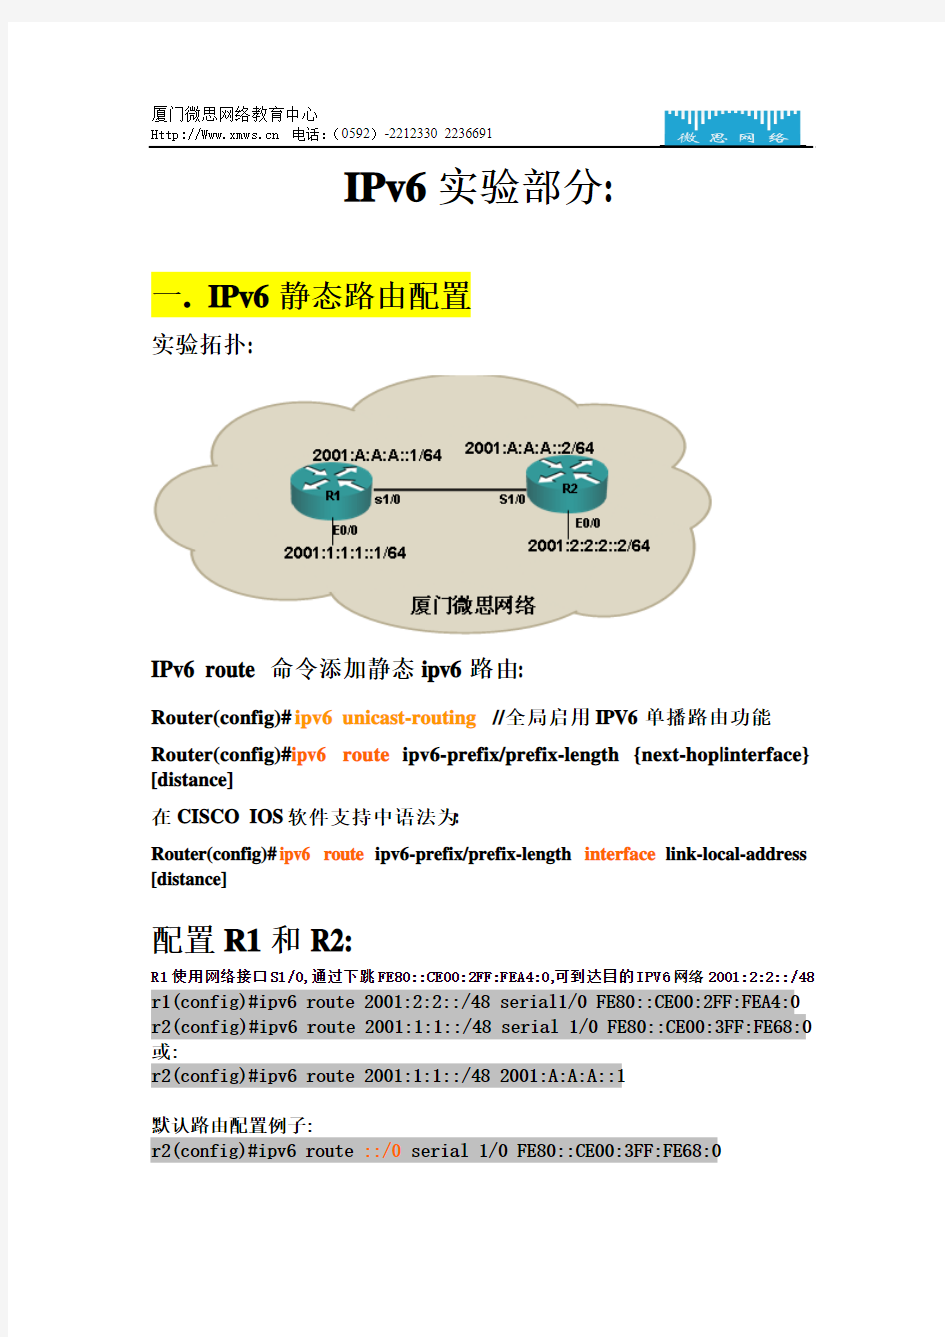 cisco 中IPv6实验部分